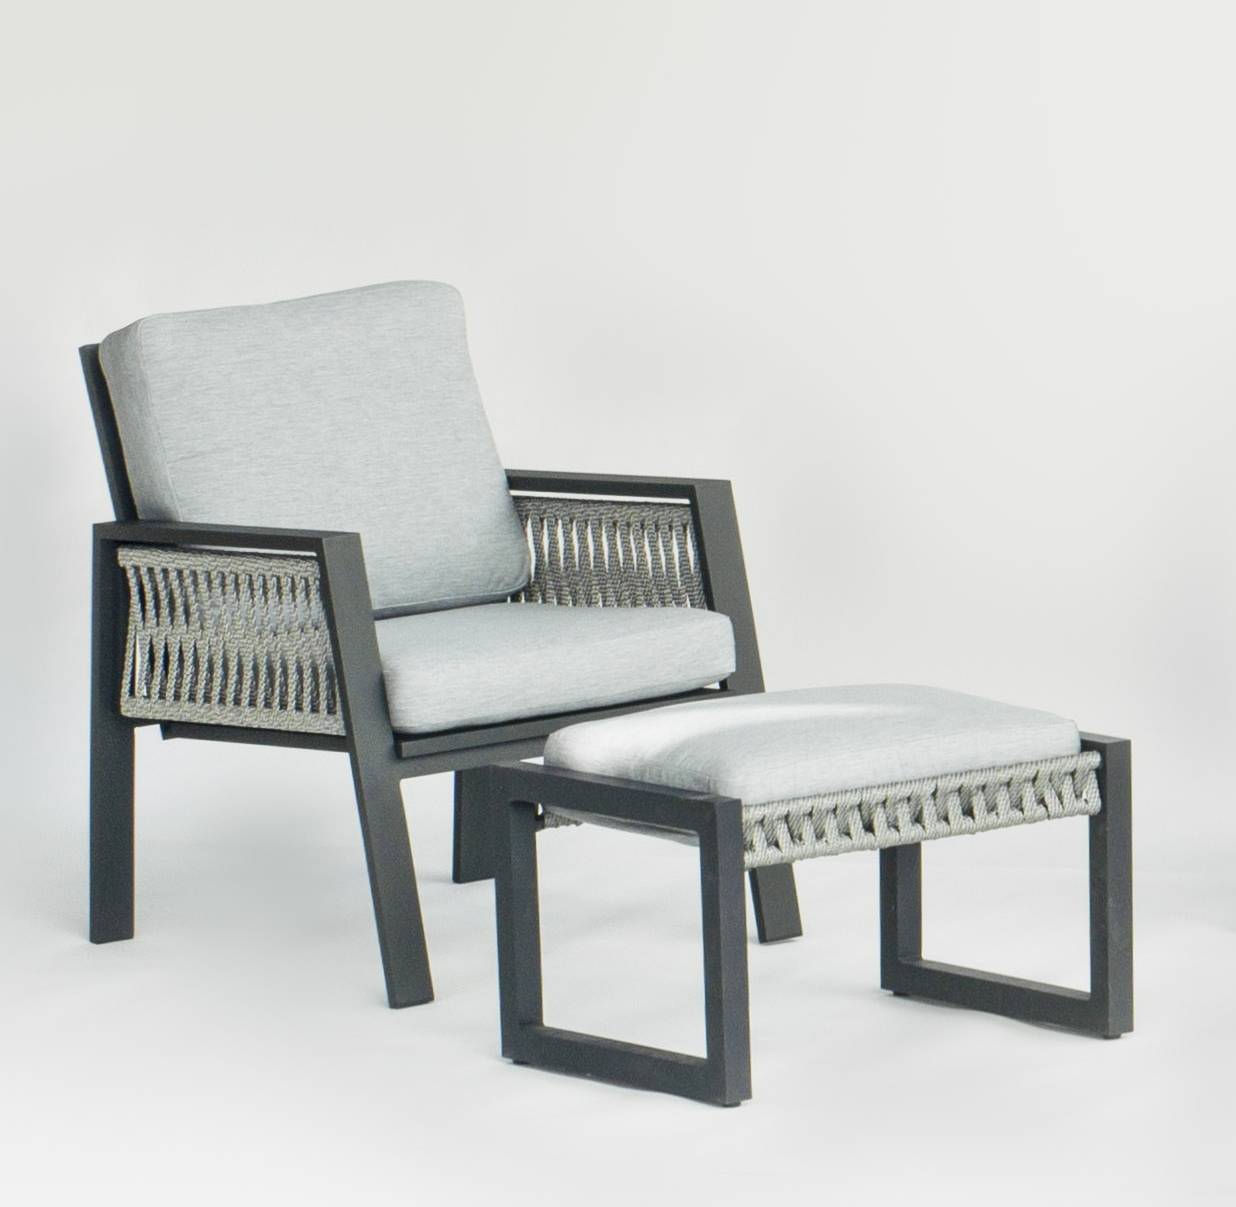 Set Aluminio Aldara-8 - Conjunto aluminio y cuerda: 1 sofá de 3 plazas + 2 sillones + 1 mesa de centro + cojines. En color blanco, gris, marrón o champagne.